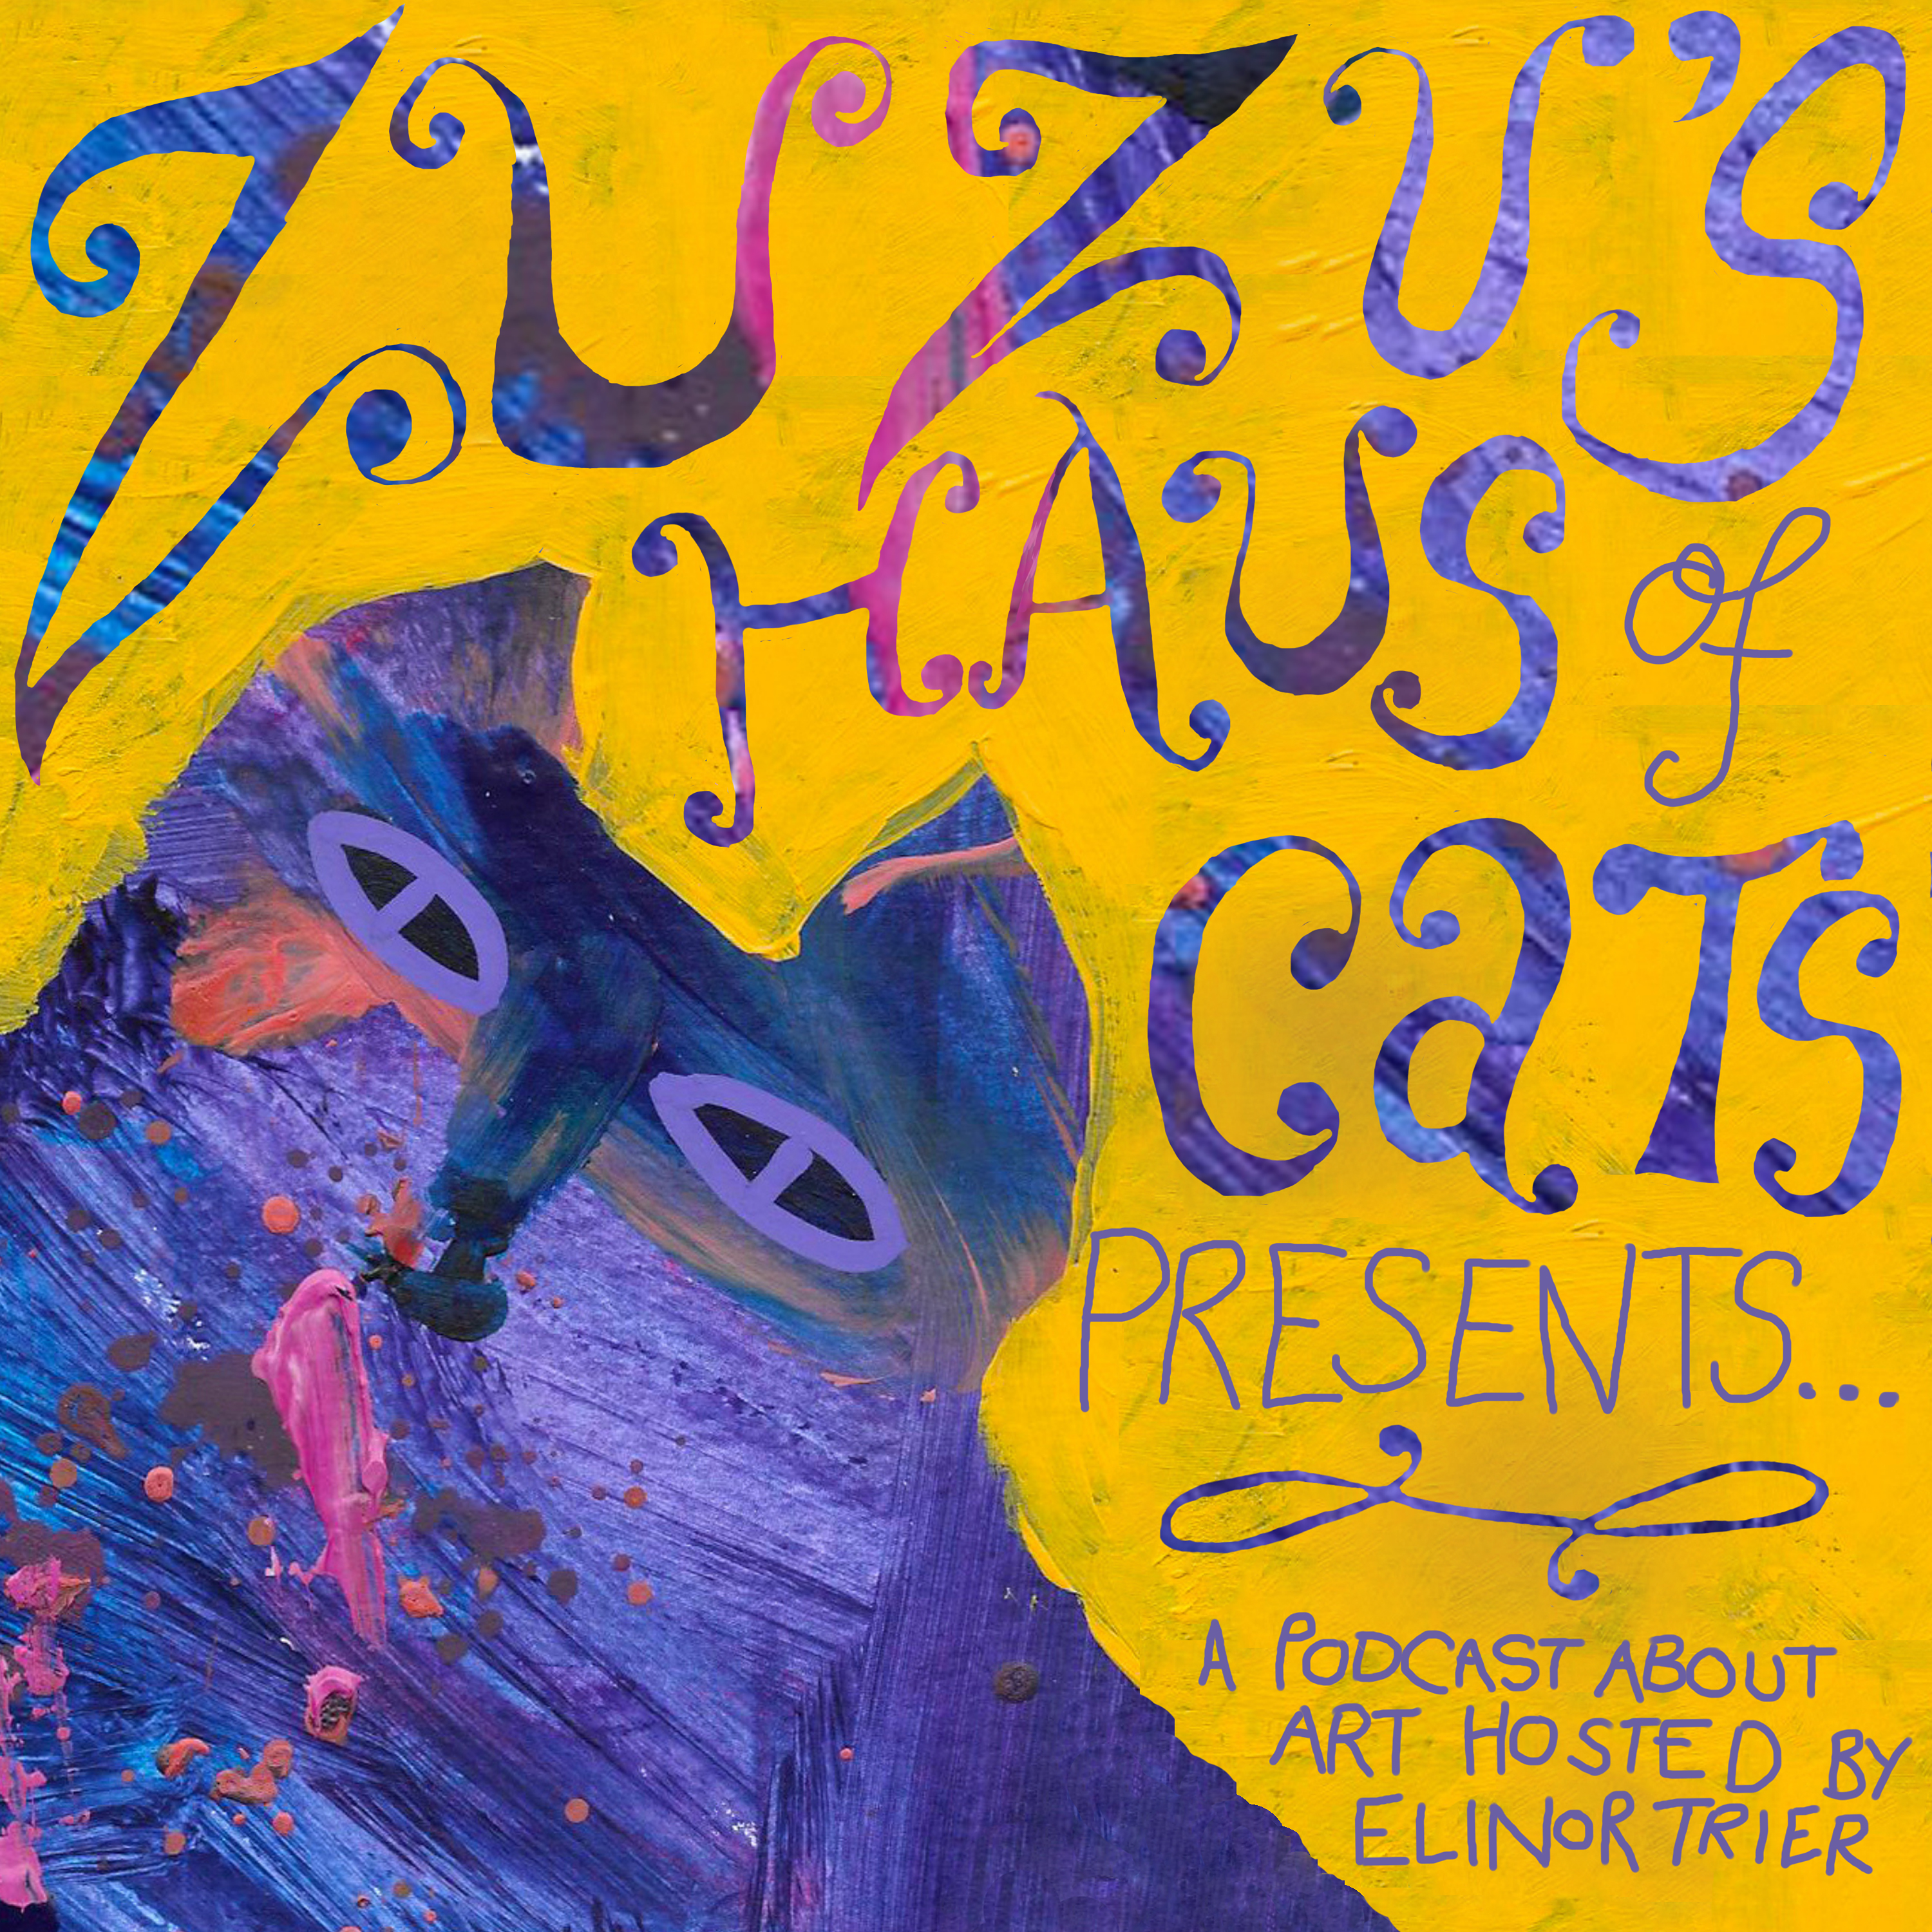 Zuzu's Haus of Cats Presents... Image